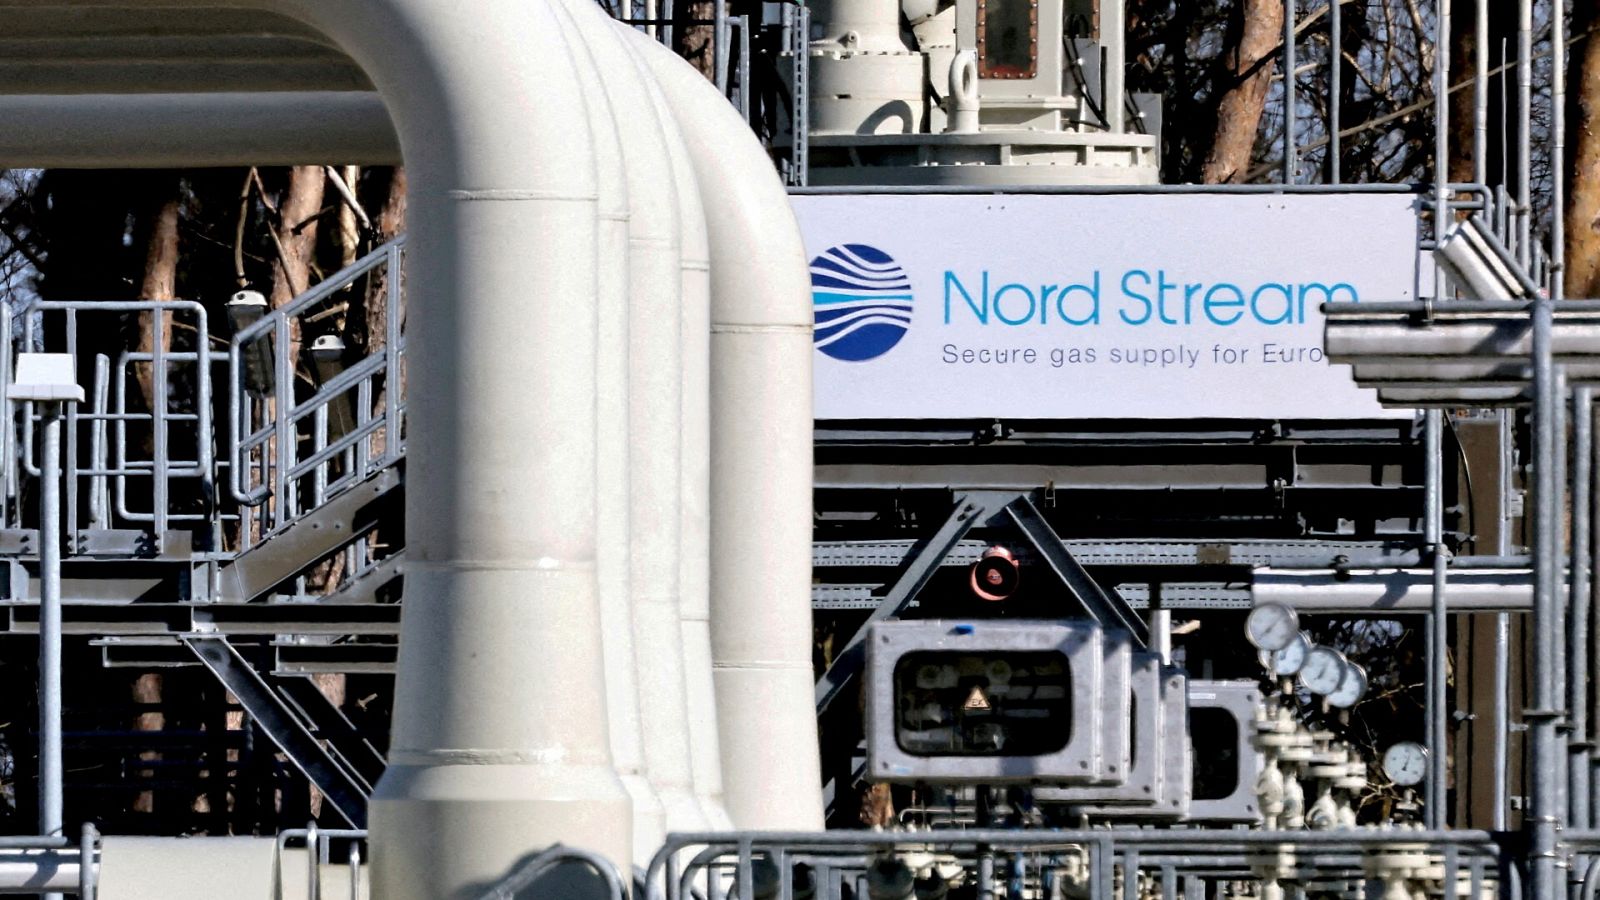 Instalaciones del gasoducto Nordstream en Alemania